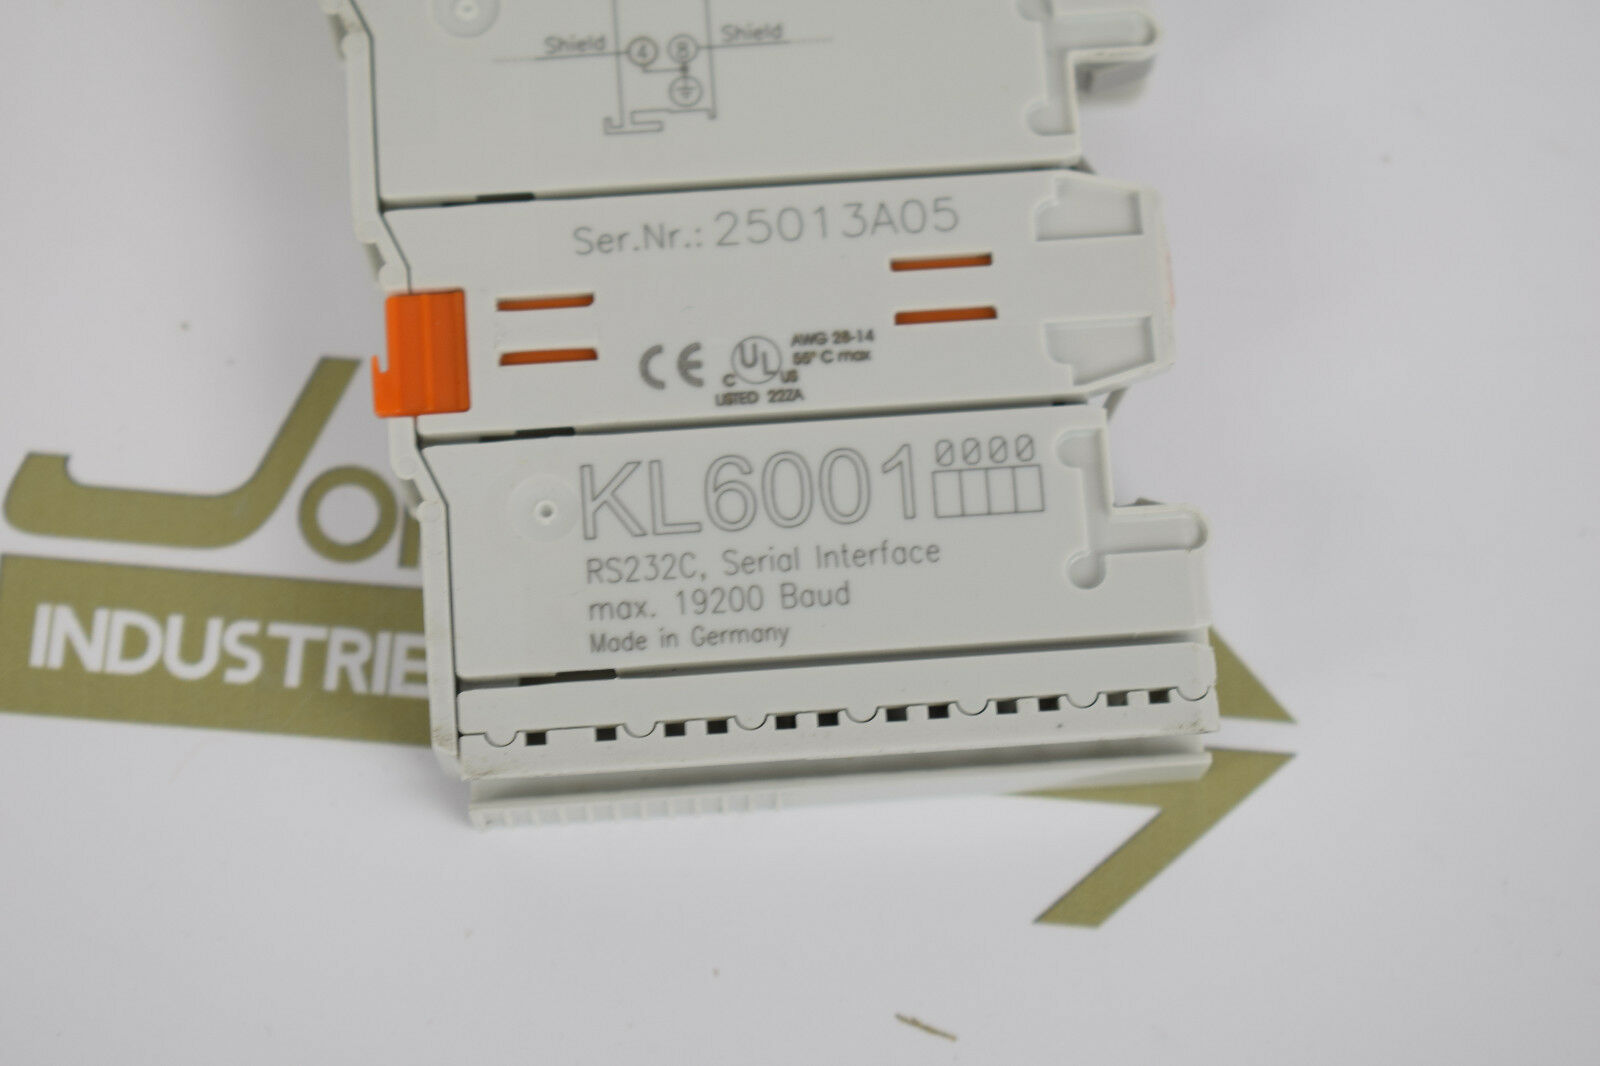 Beckhoff RS232C 1-Kanal-Kommunikations-Interface KL6001